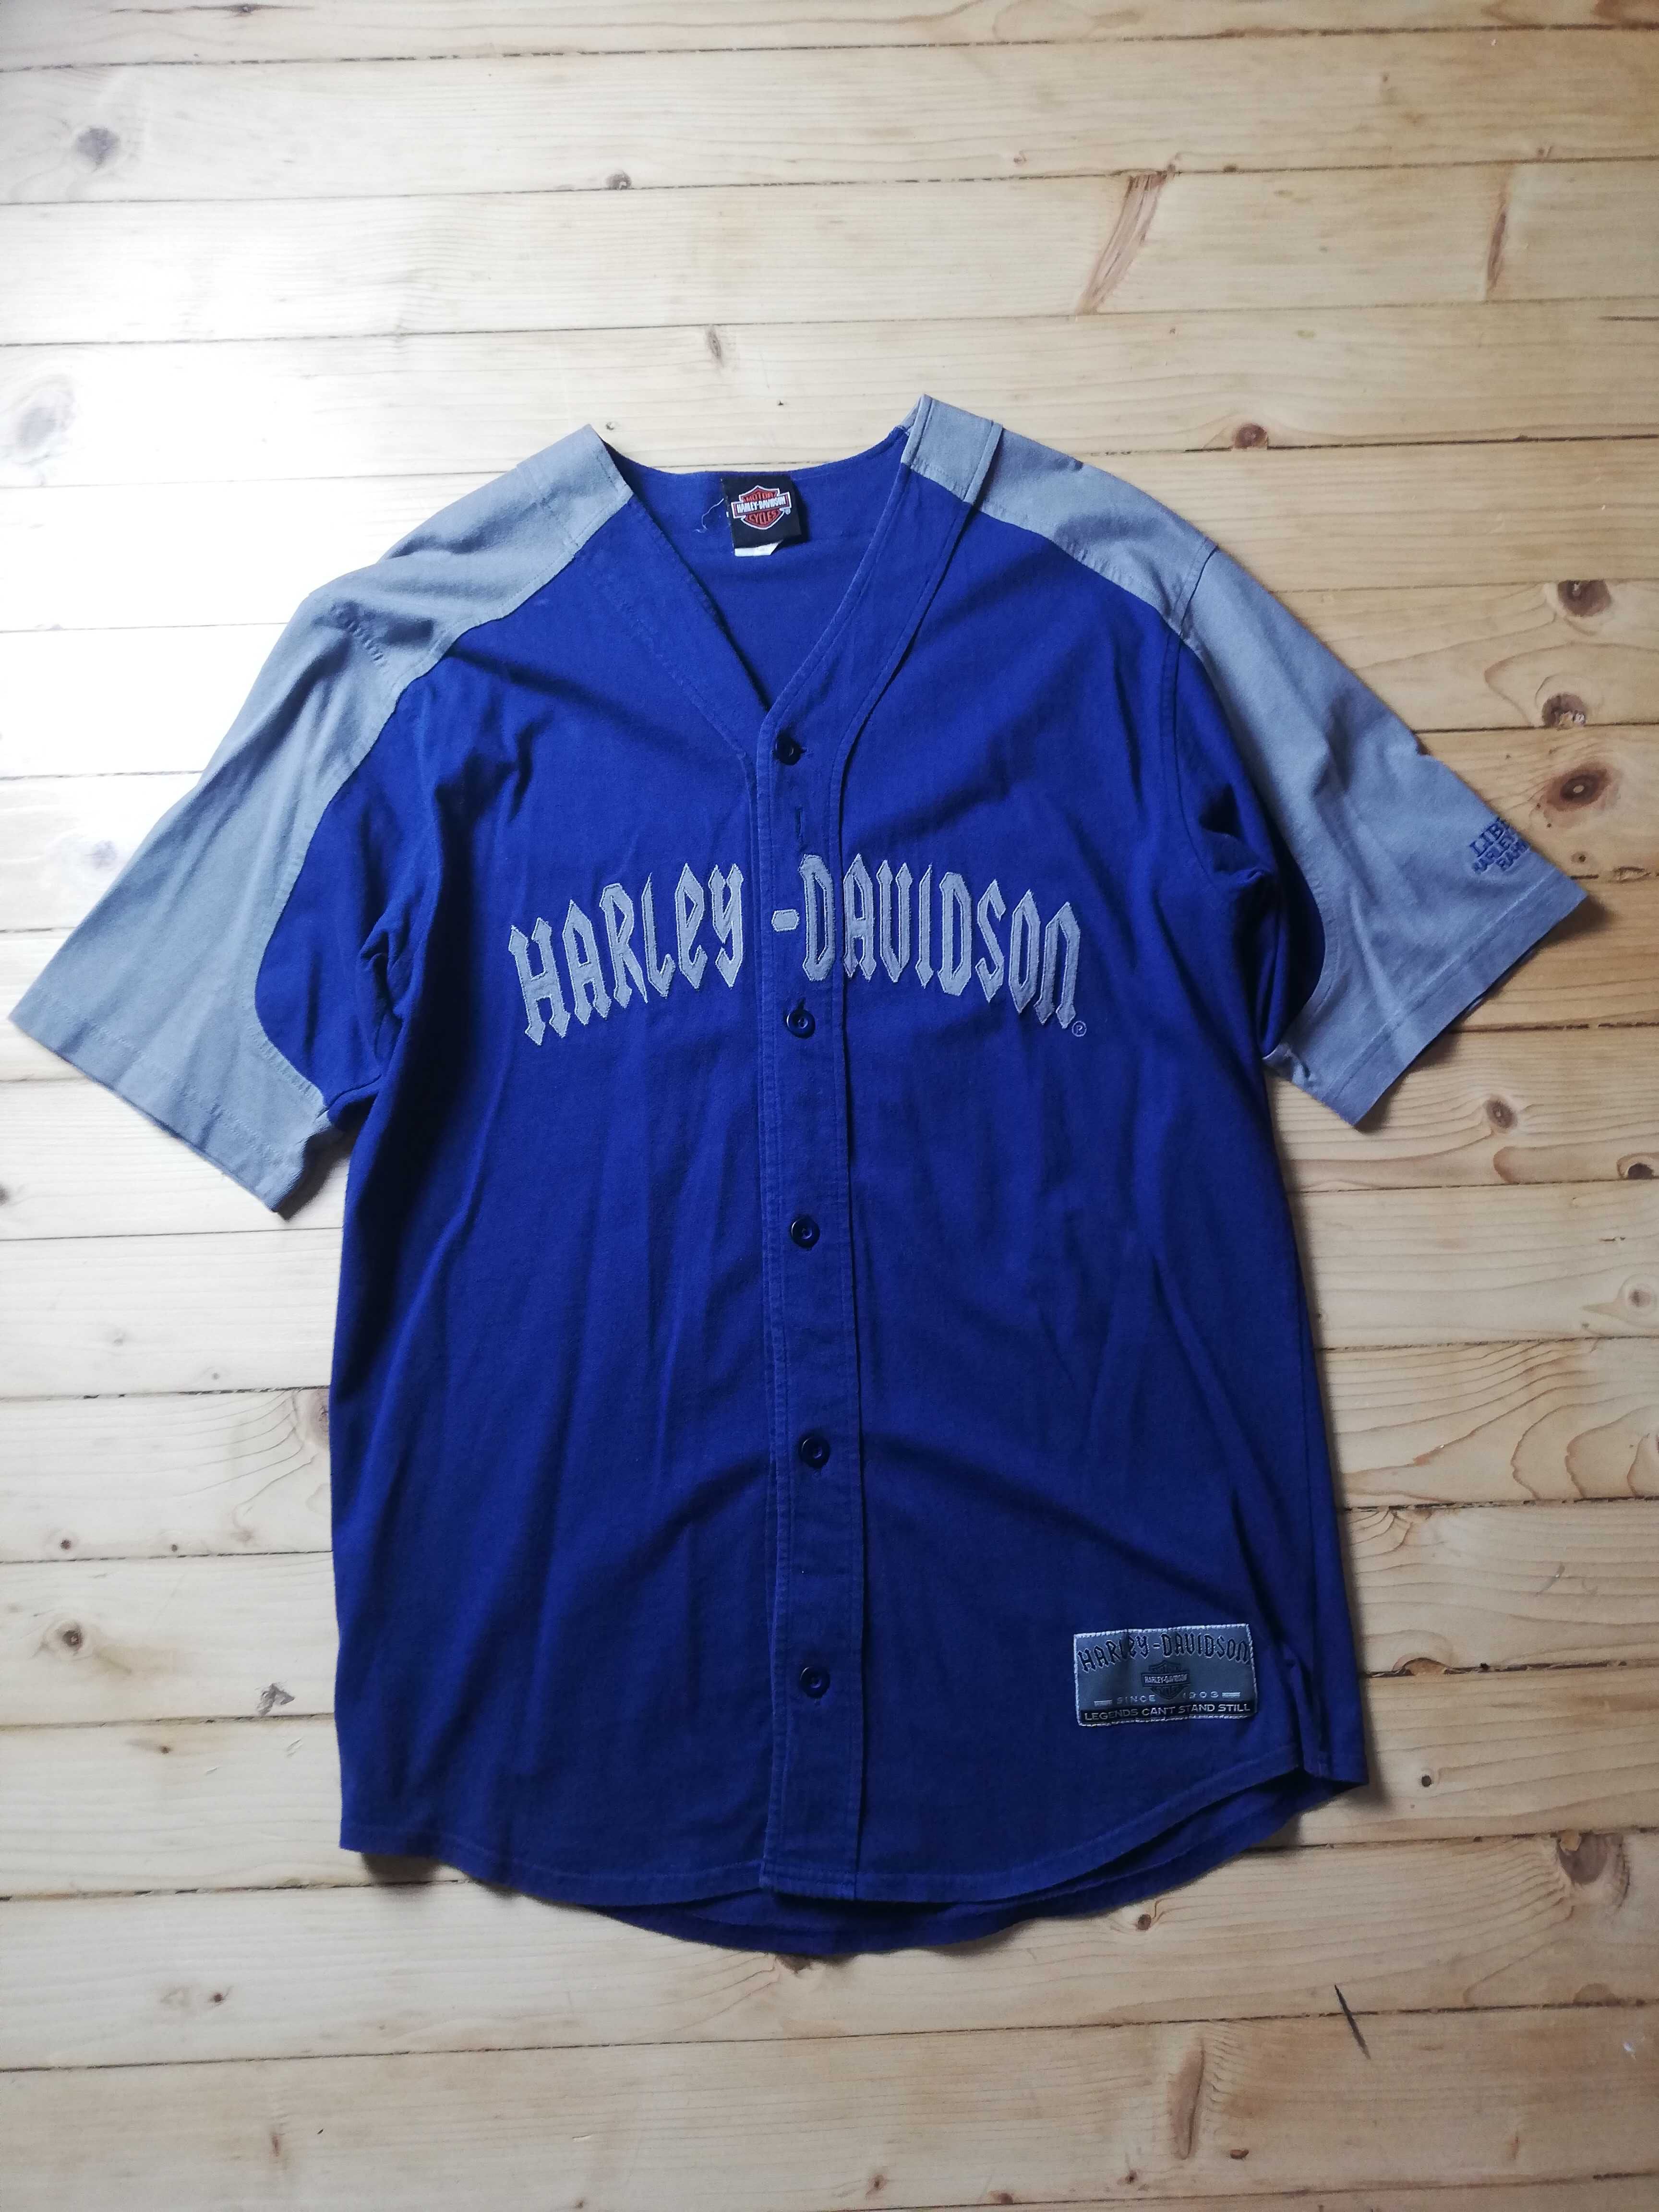 Harley - Davidson - Baseball Jersey - Super Rare Edition - Size L